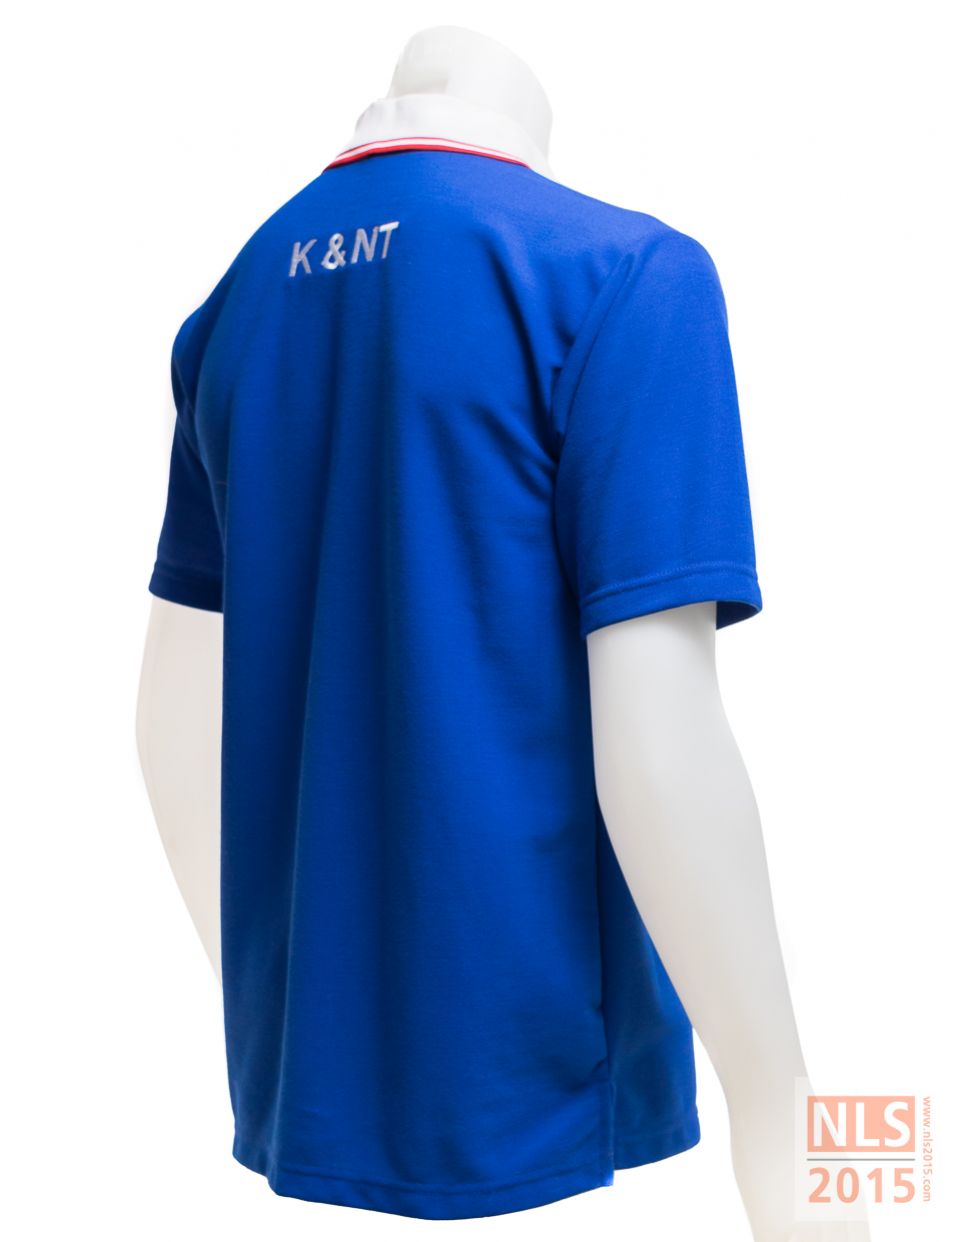 แบบเสื้อโปโล บริษัท K&NT Container - นลินสิริ รับตัดเสื้อโปโล ศรีราชารูปที่ 